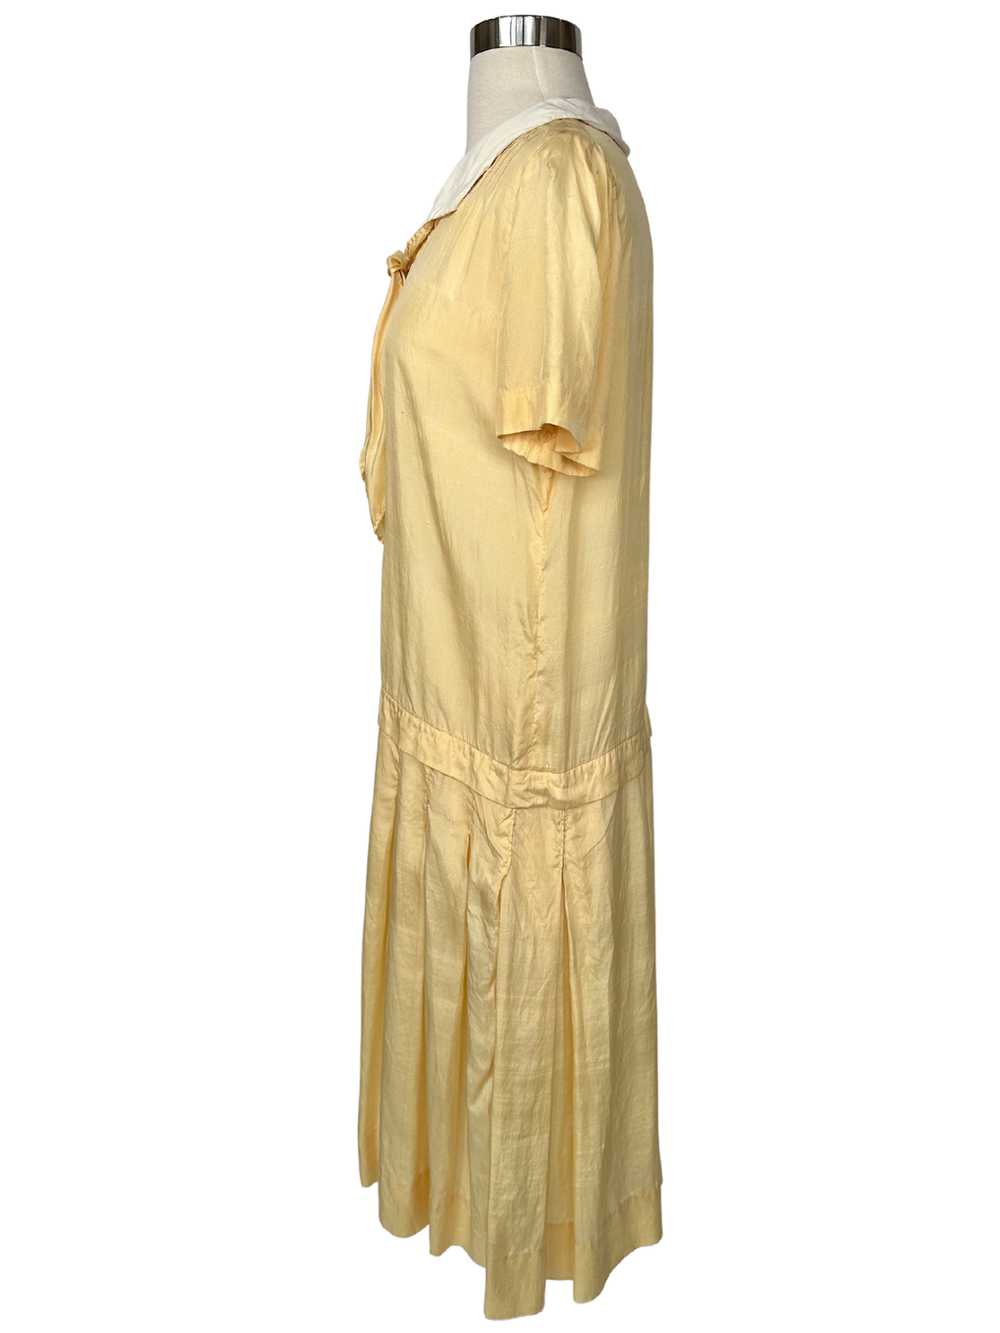 Vintage 1920s Yellow Cotton Flapper Dress - M - image 4